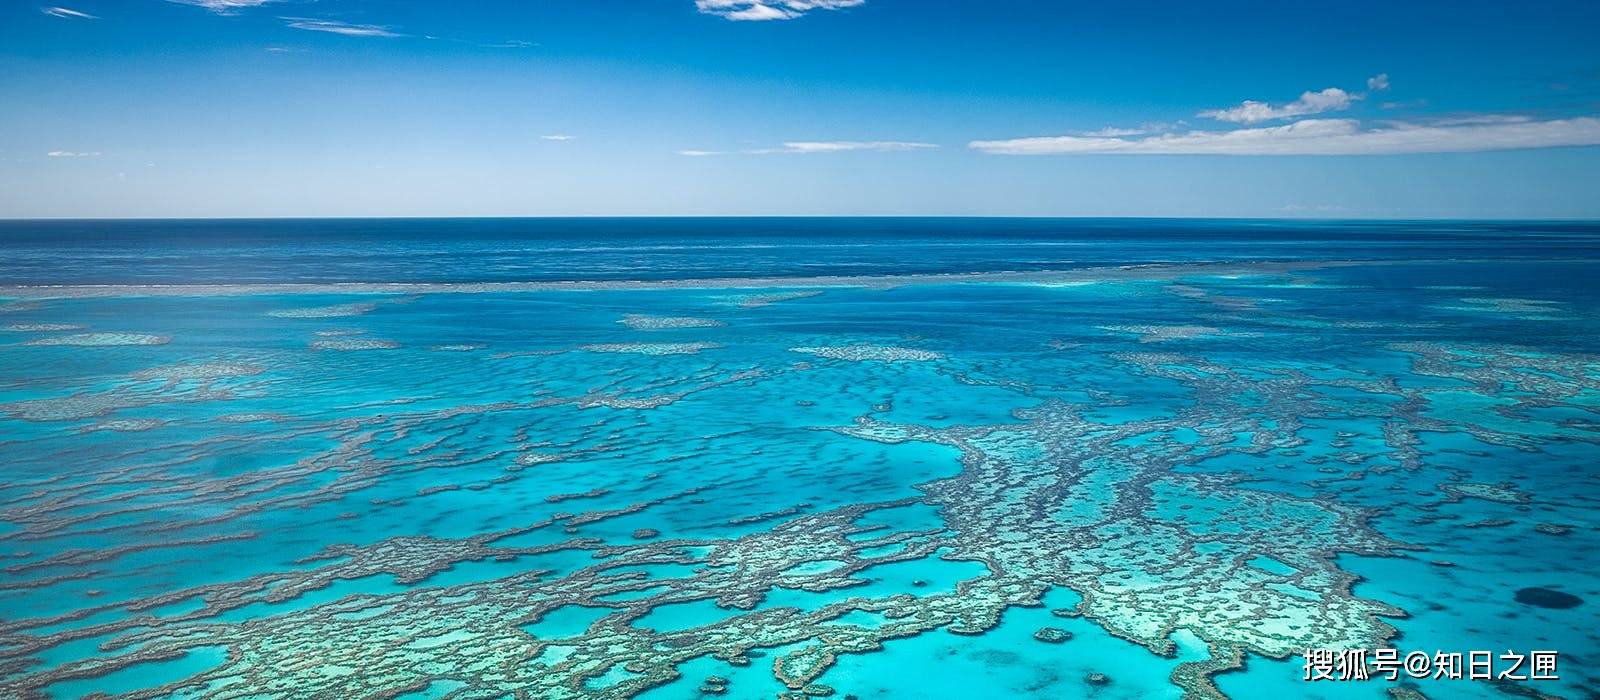 拥有全世界最古老的雨林和最大的珊瑚礁！令人难忘的纯净自然！